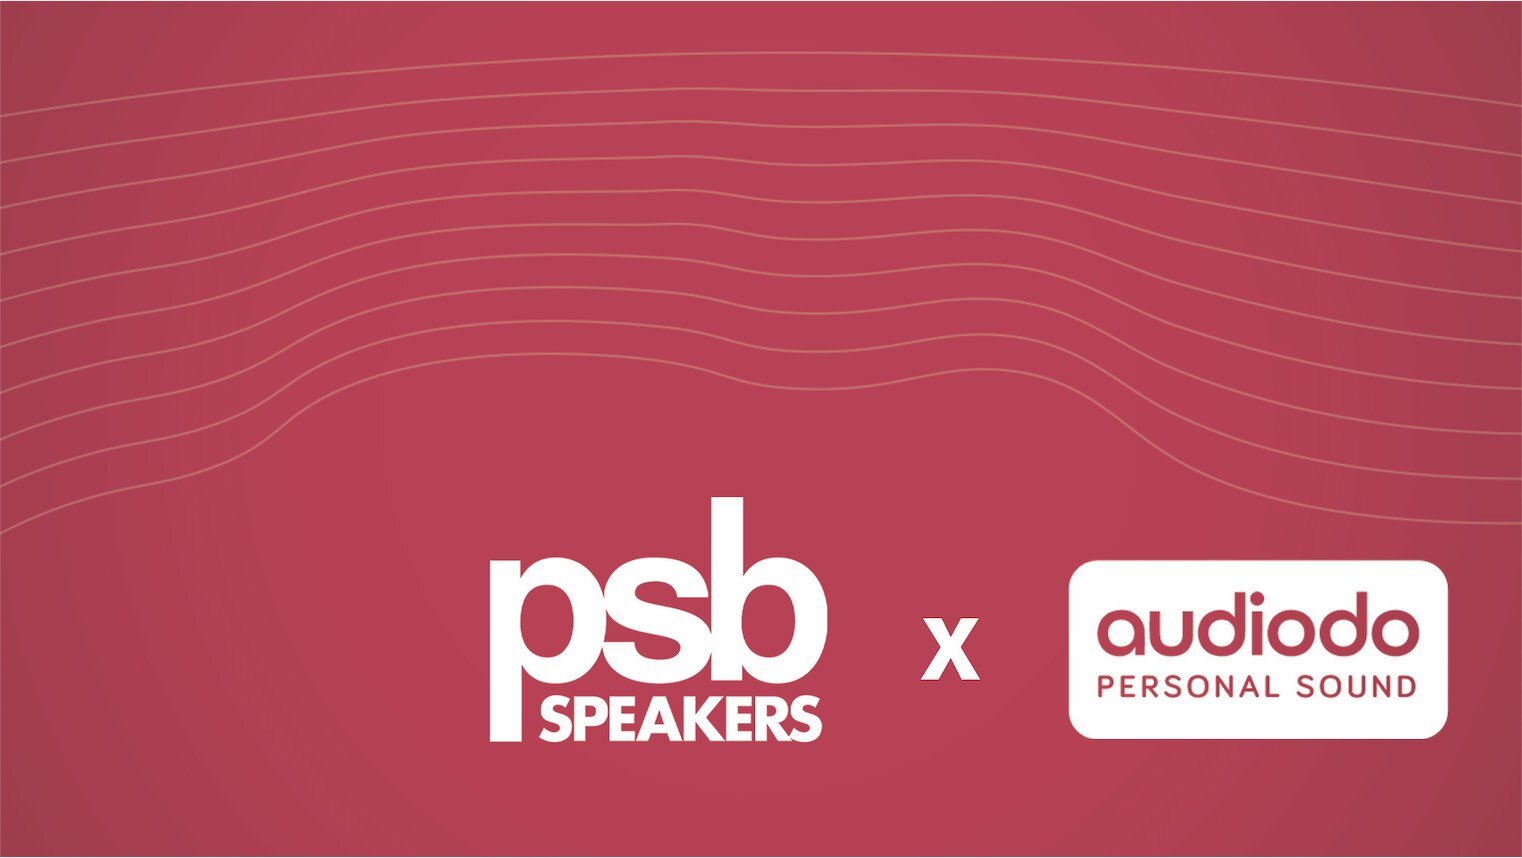 PSB Speakers annonce un partenariat avec Audiodo